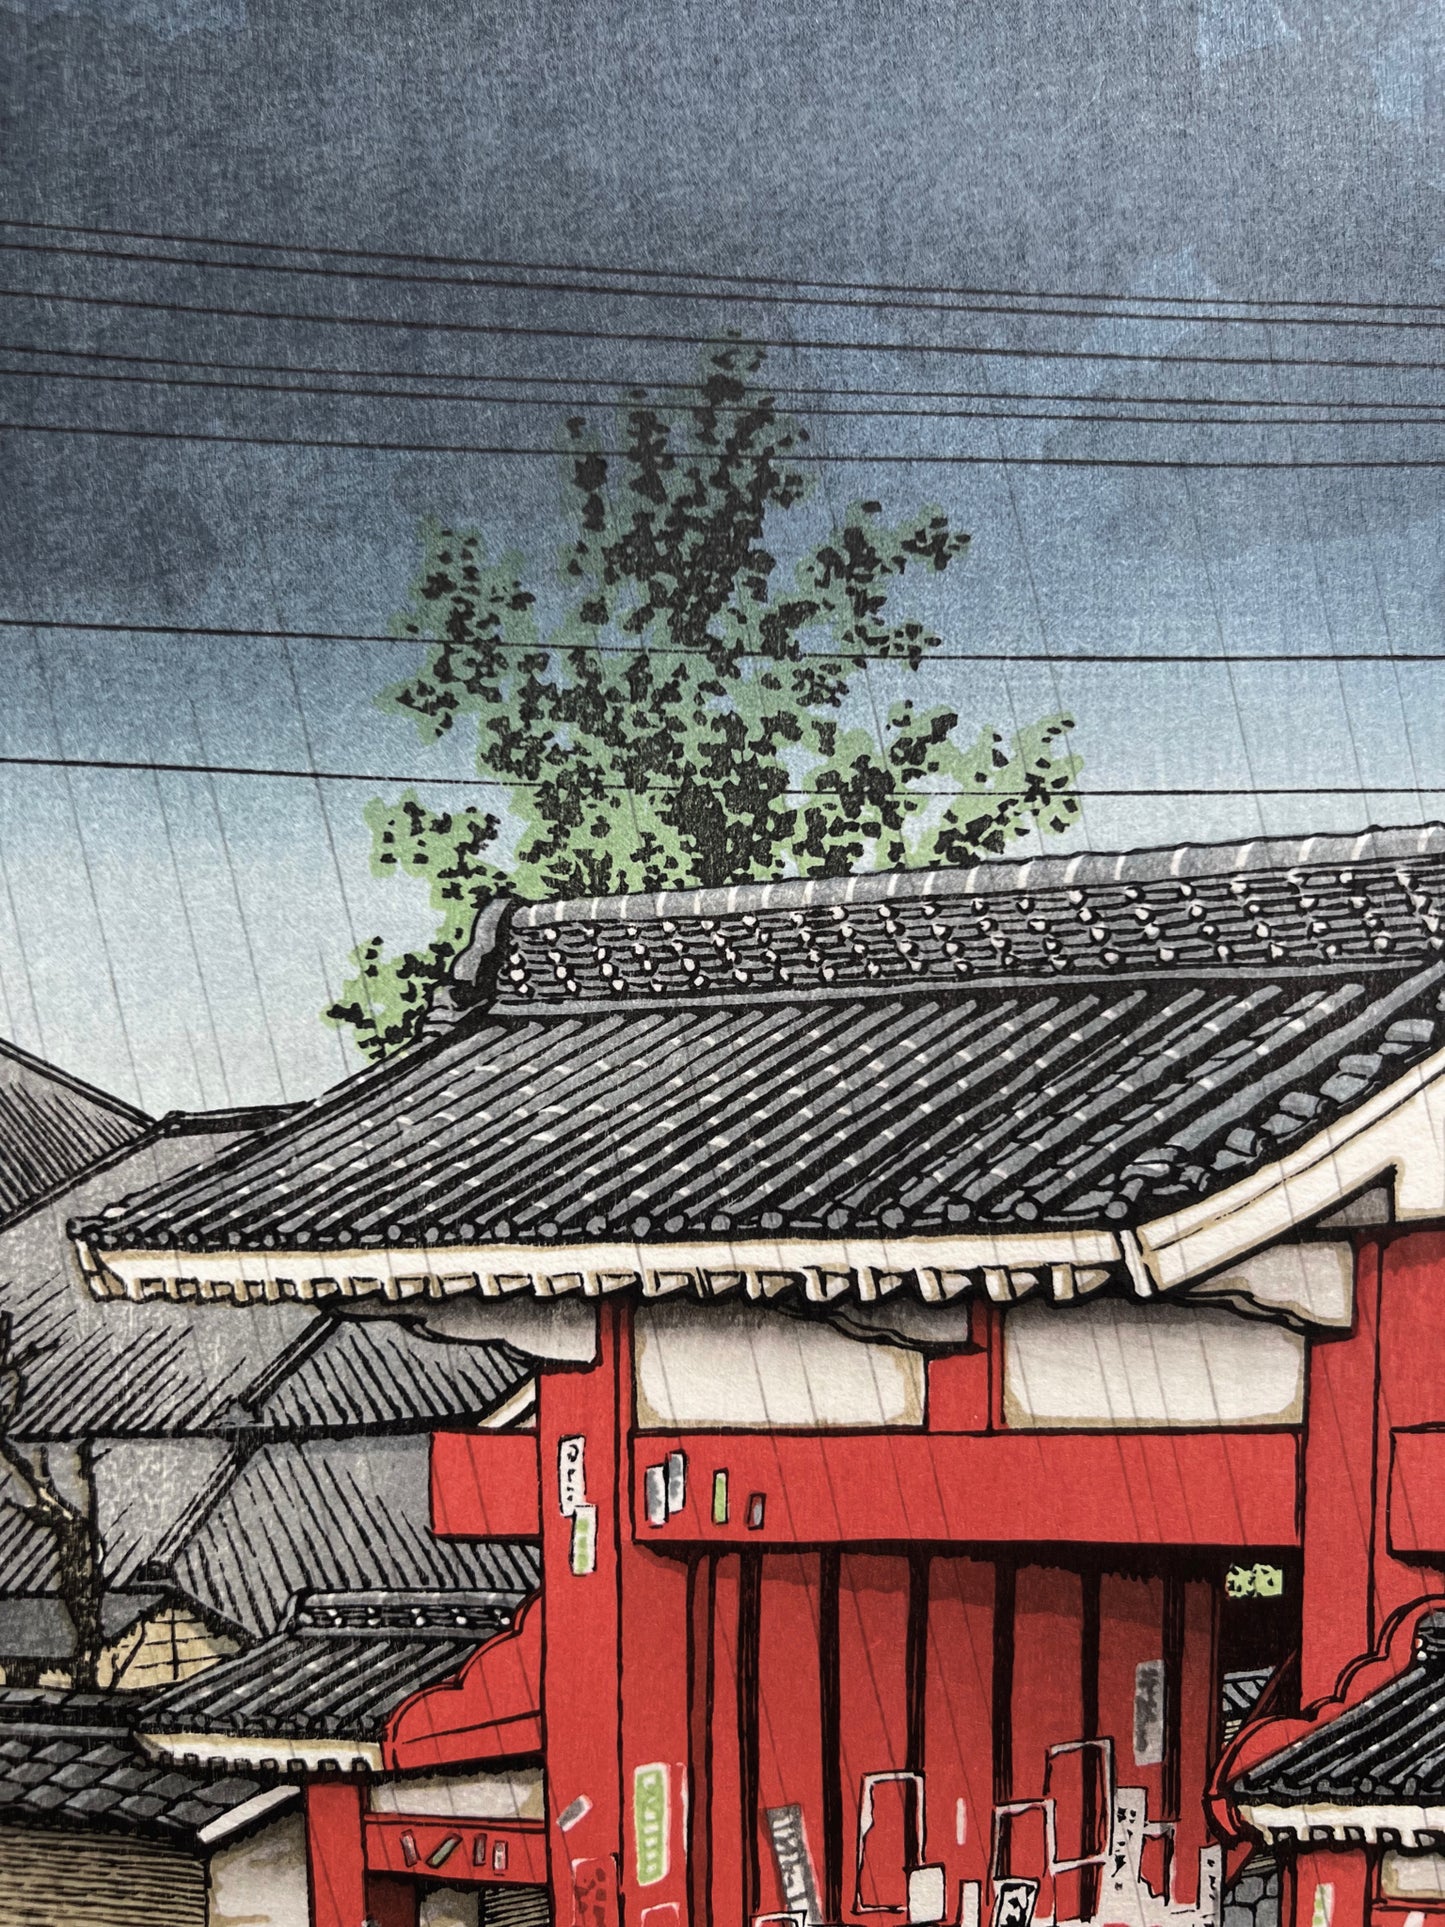 estampe japonaise un personnage à vélo franchit la grande porte rouge d'un temple sous la pluie à Tokyo, le ciel gris pluvieux